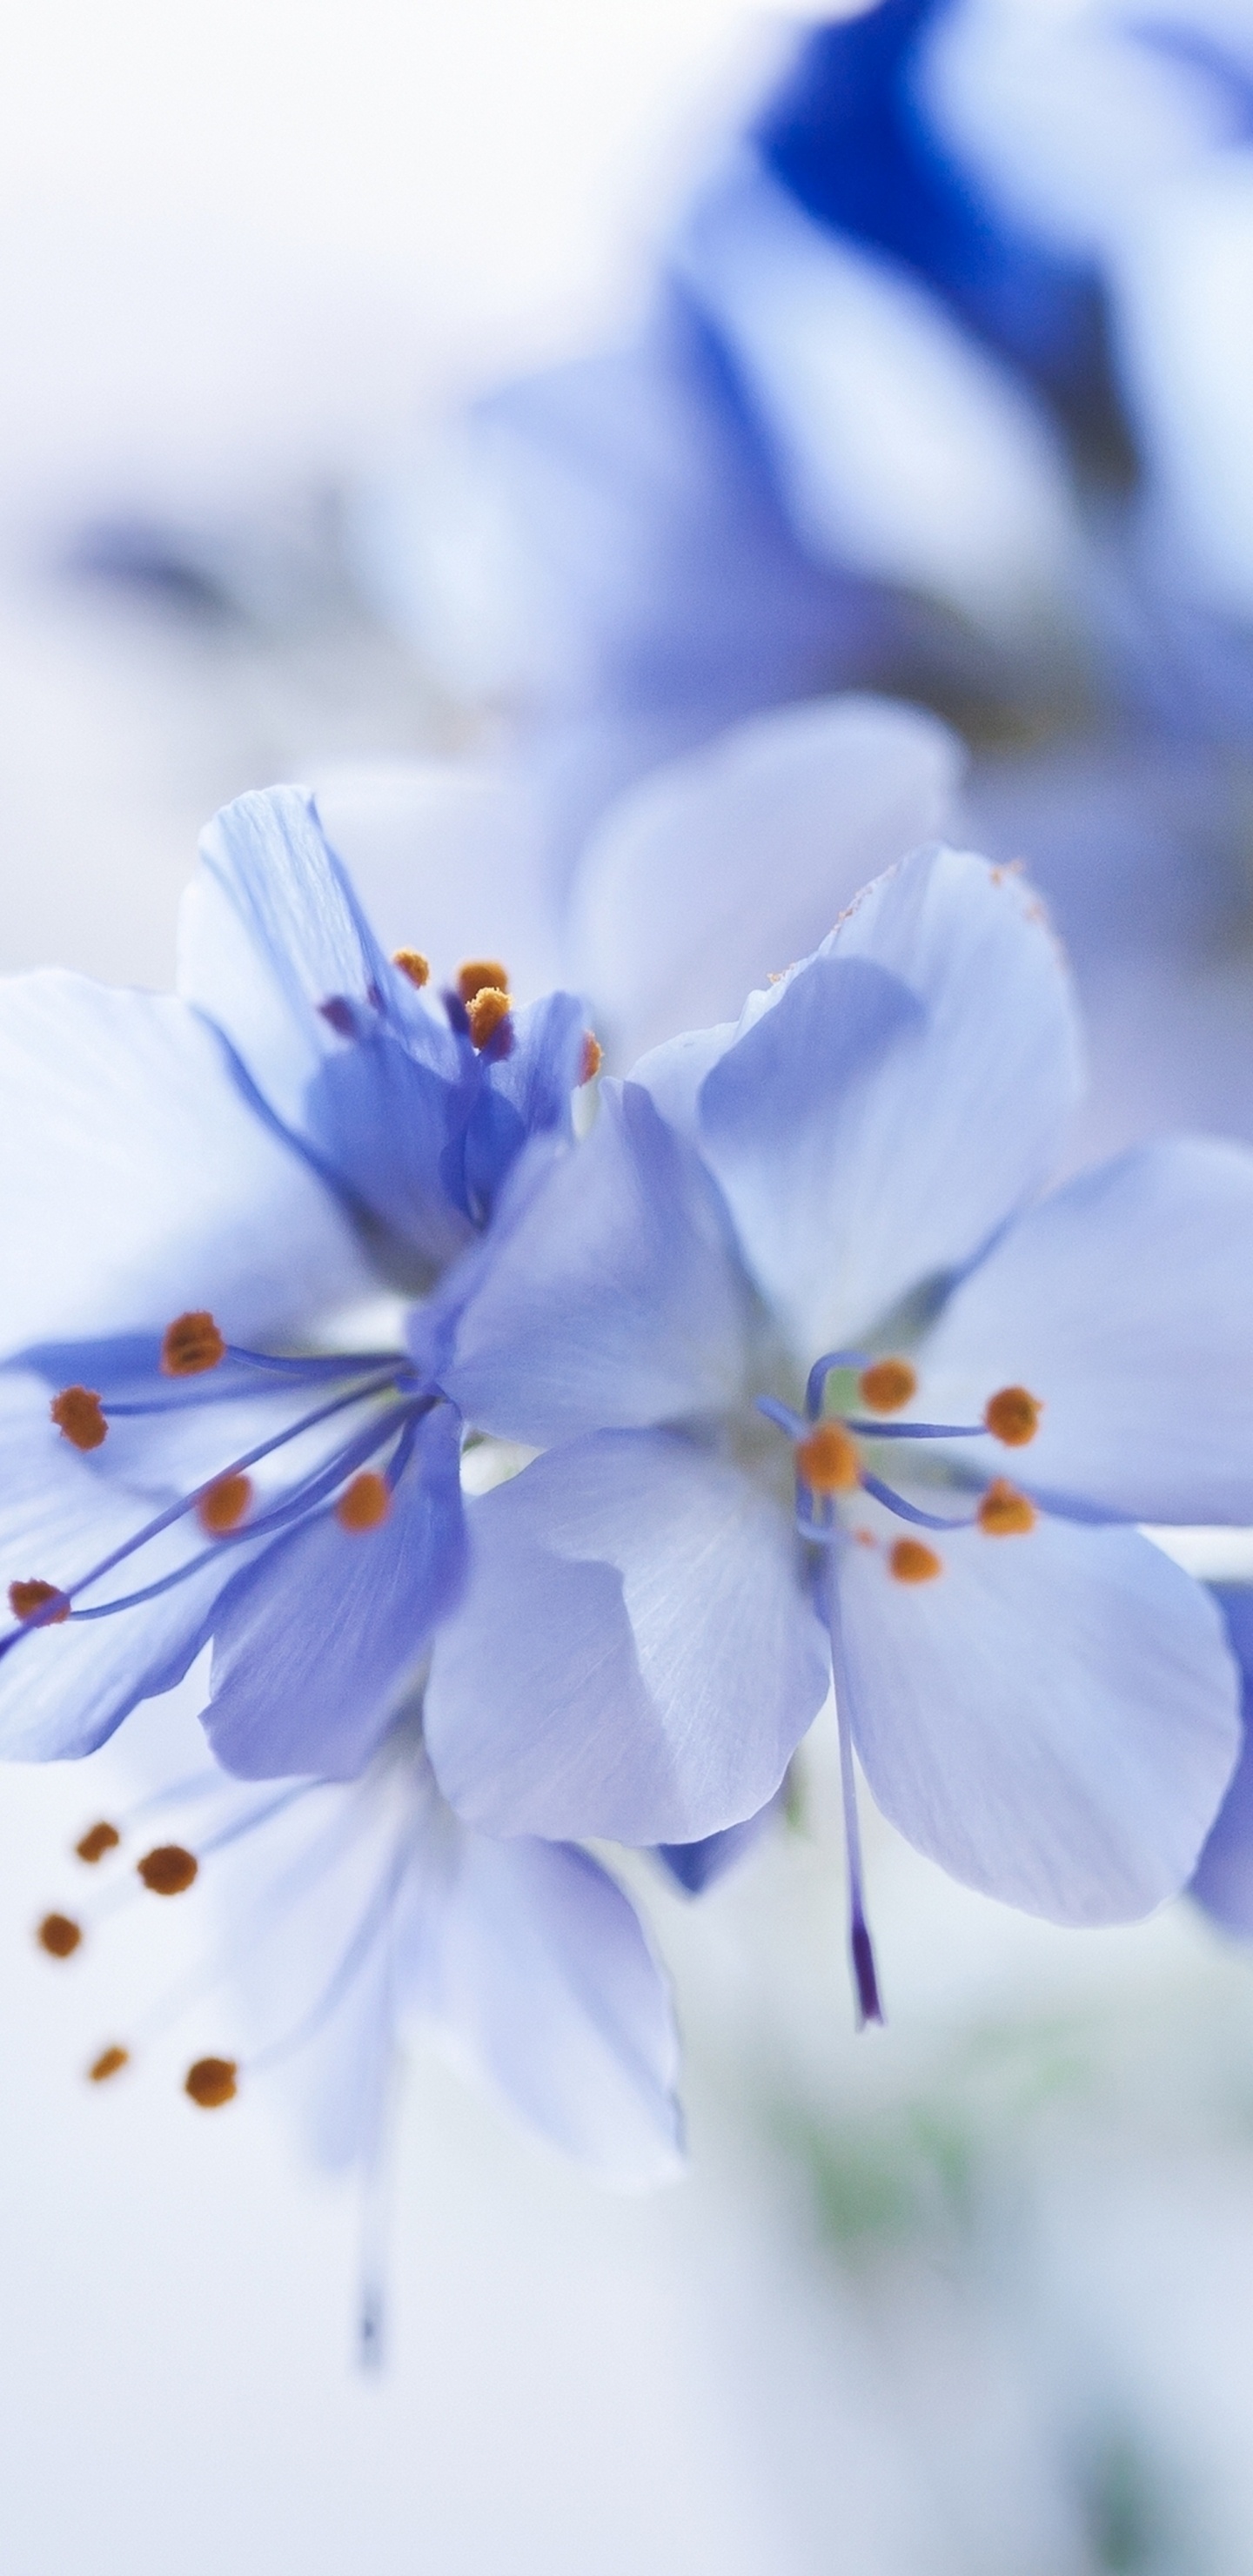 White and Blue Flowers in Tilt Shift Lens. Wallpaper in 1440x2960 Resolution